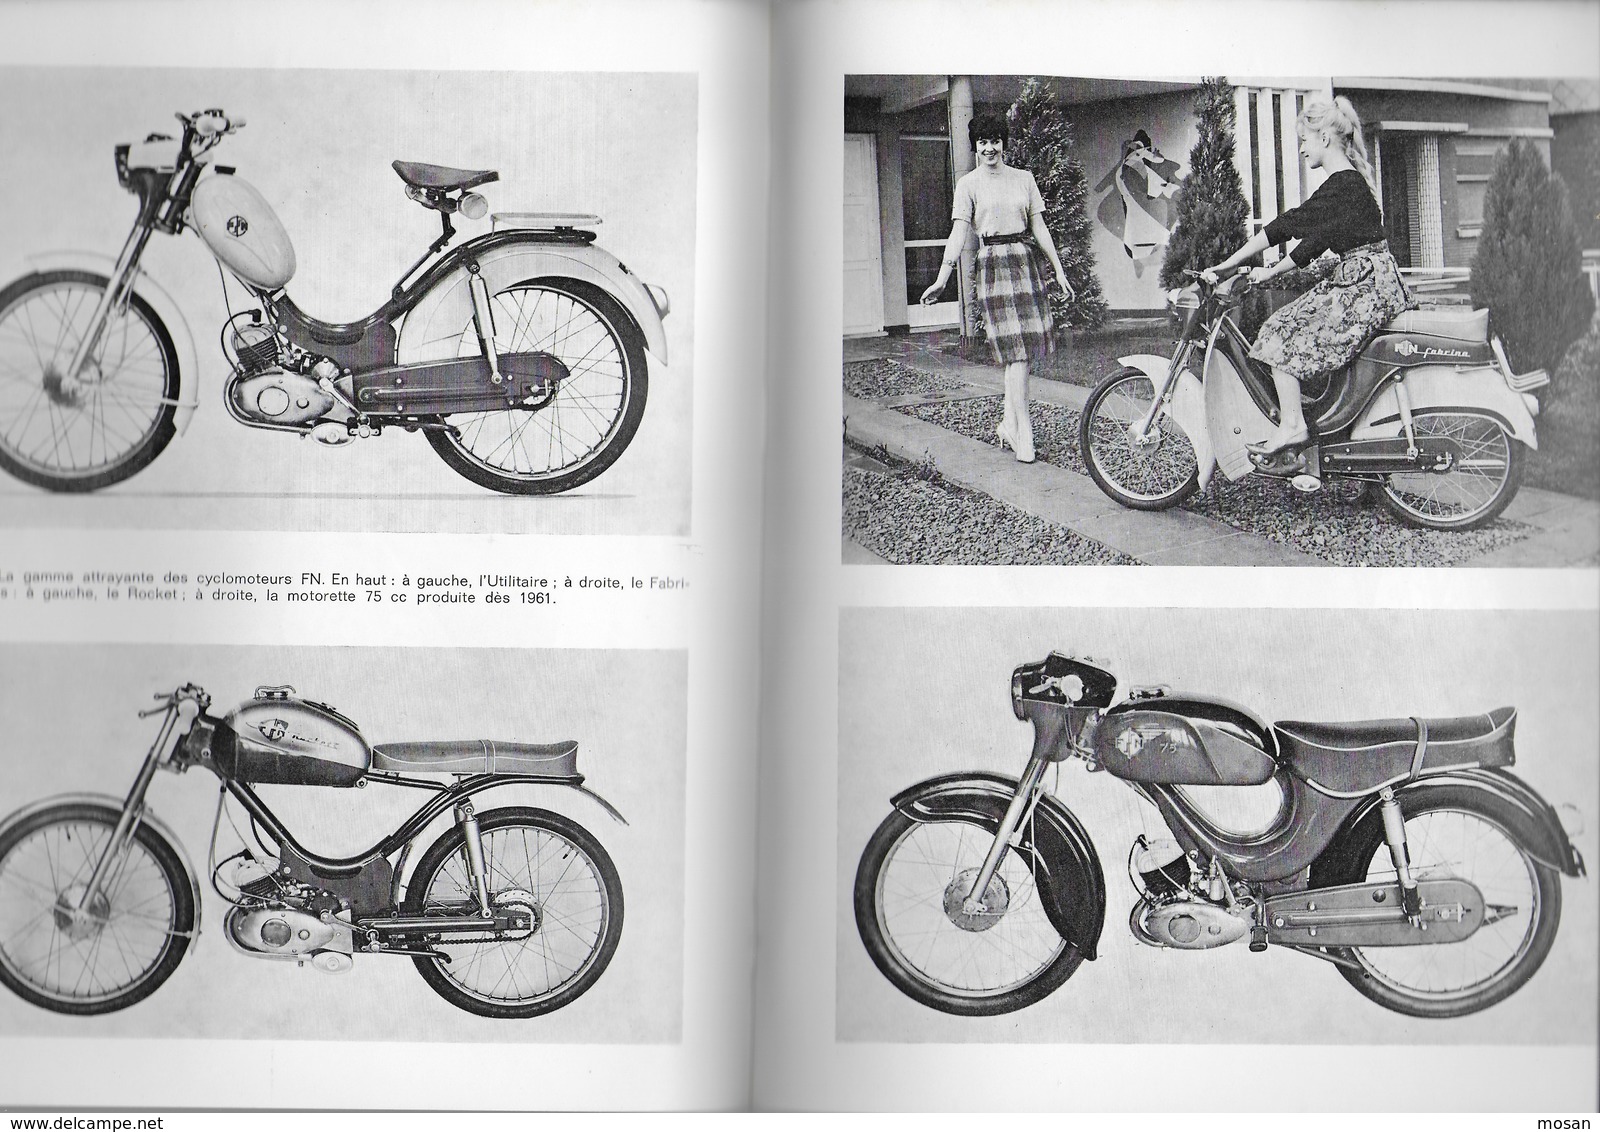 Les dames de la Basse-Meuse. Les motocyclette liégeoise de 1940 - 1965. Liège. Moto. Motard. Gilbert Gaspard. Rare